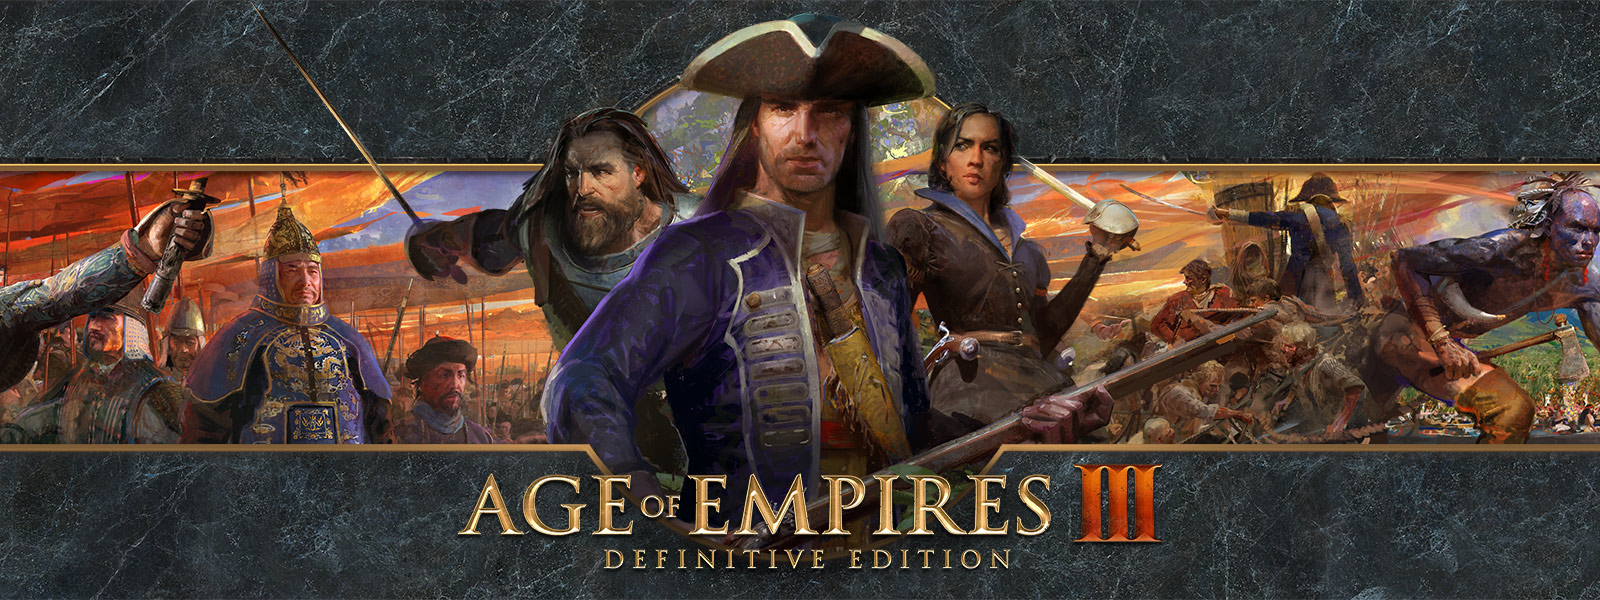 Logo Age of Empires III: Definitive Edition sur un arrière-plan présentant les chefs de guerre et leurs armées